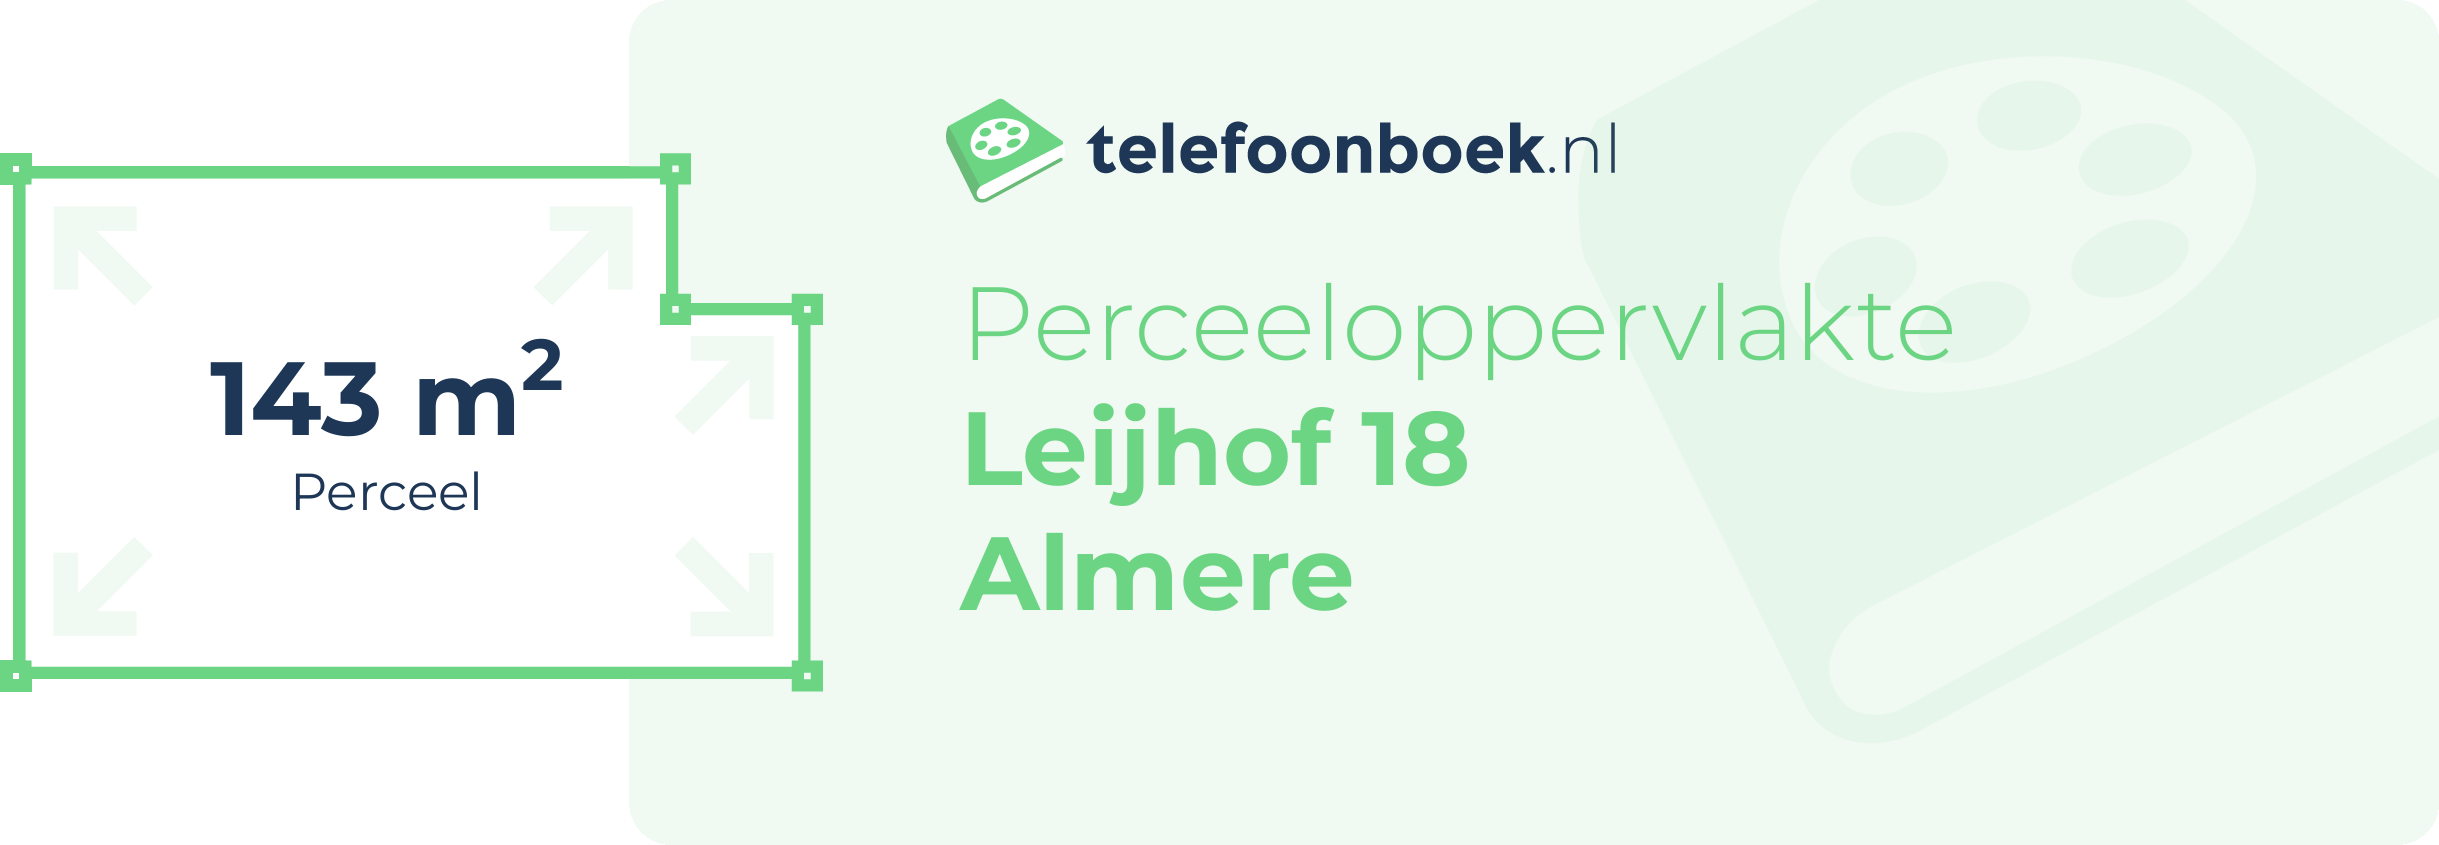 Perceeloppervlakte Leijhof 18 Almere